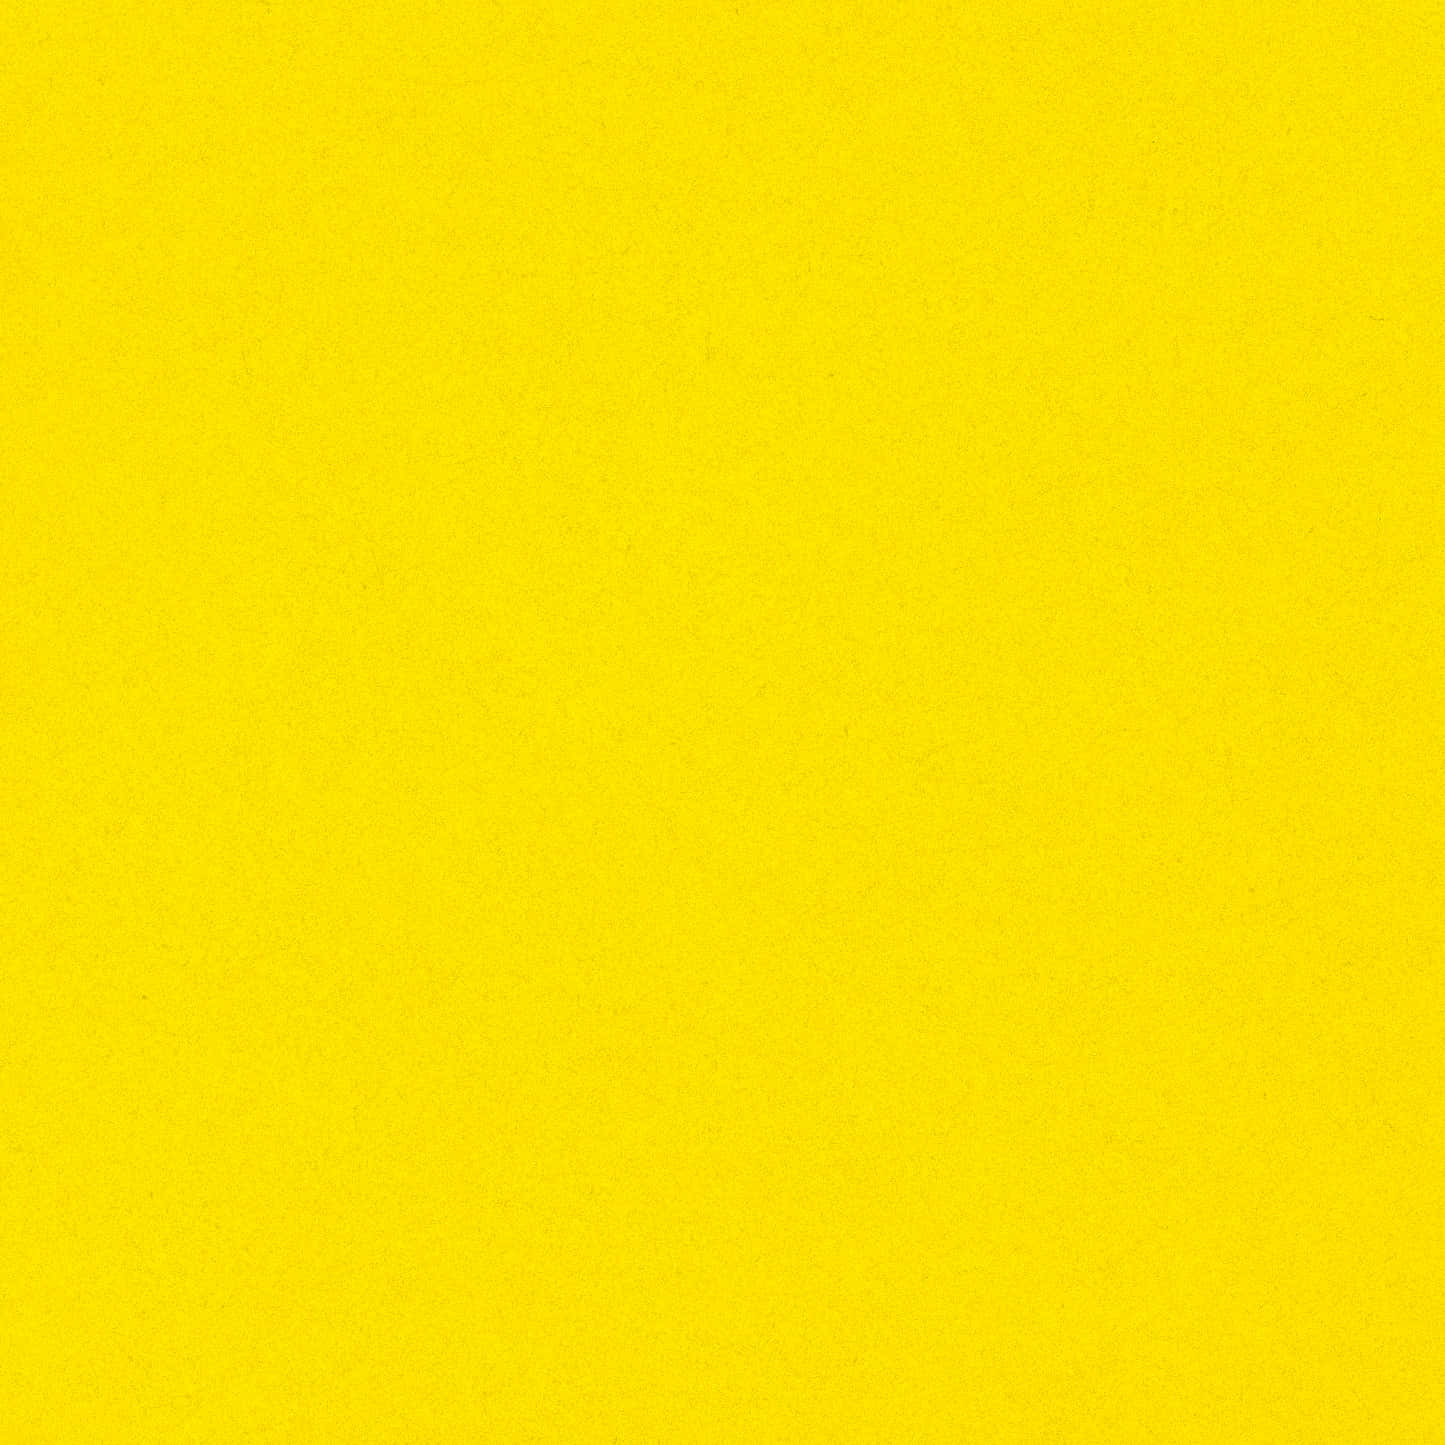 Patróncuadrado Amarillo Vibrante Fondo de pantalla